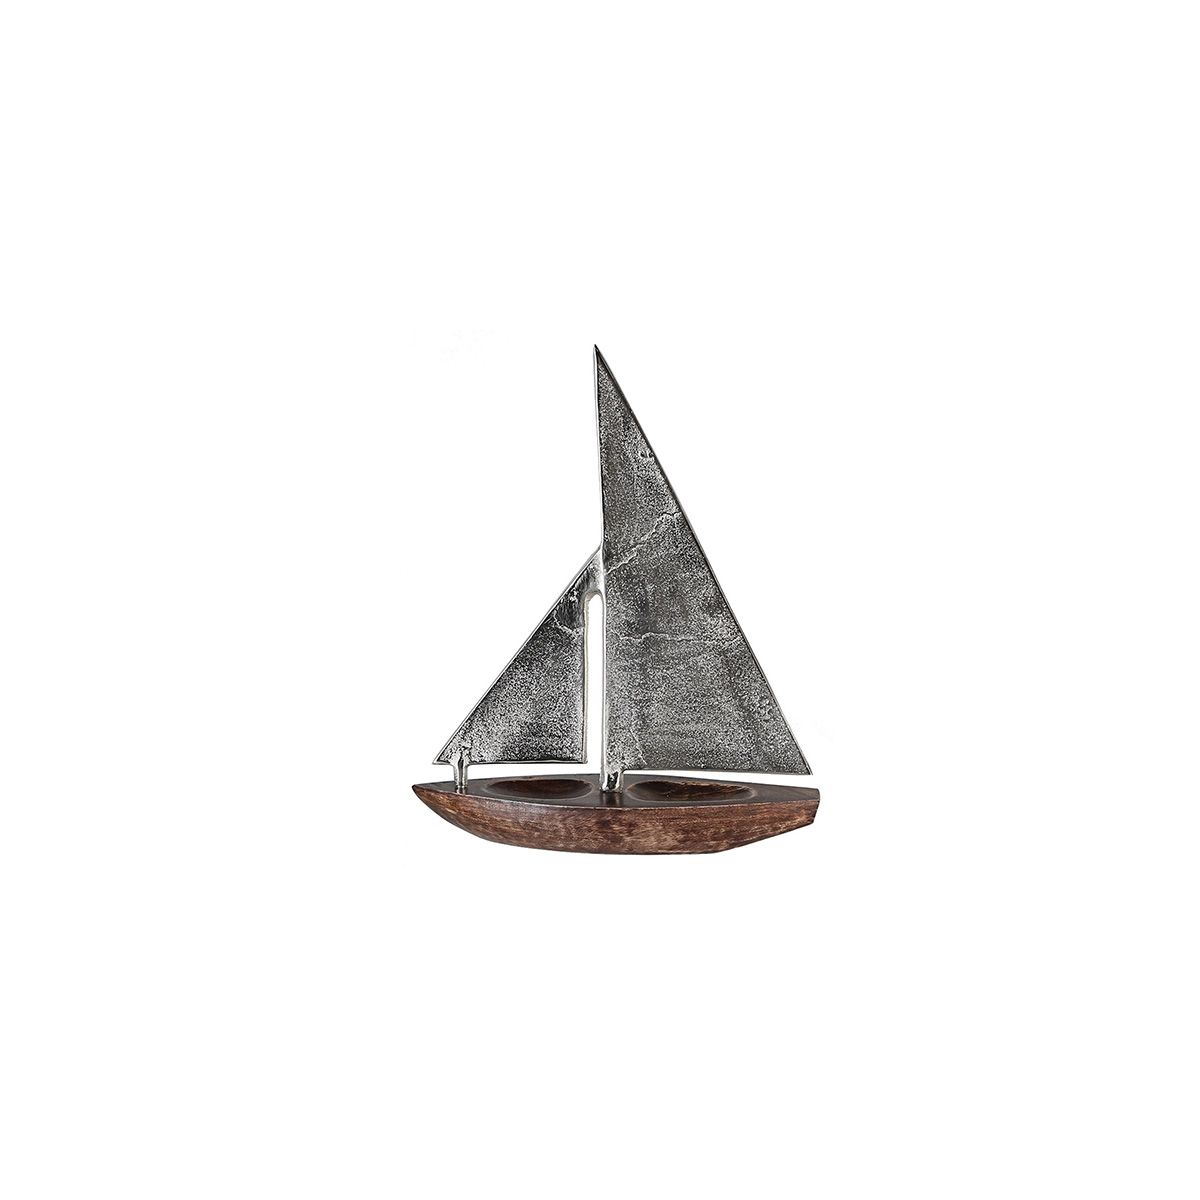 Segel Alu mit Rumpf aus Skulptur Mangoholz, Segelboot Holz